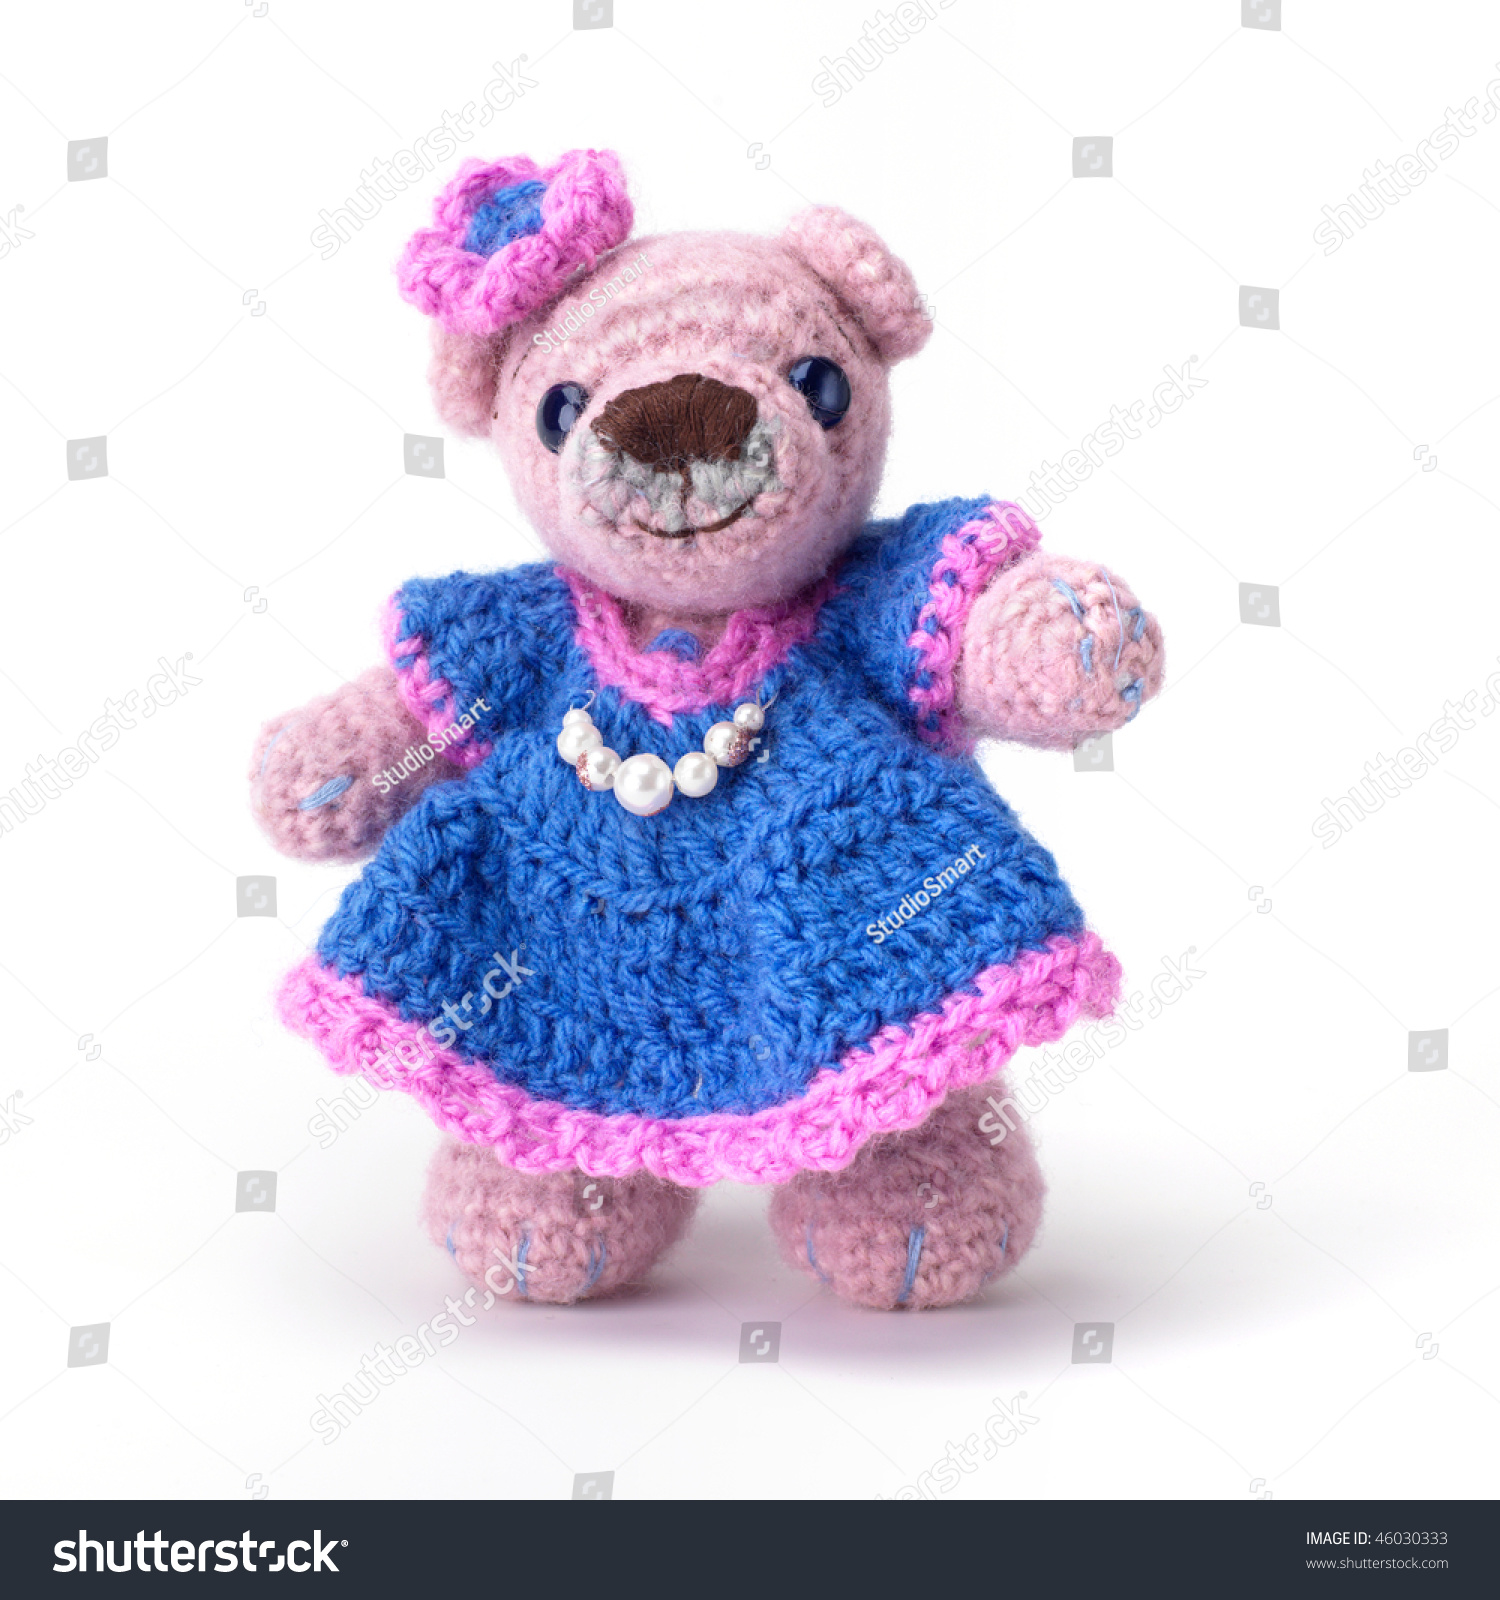 little pink teddy bear